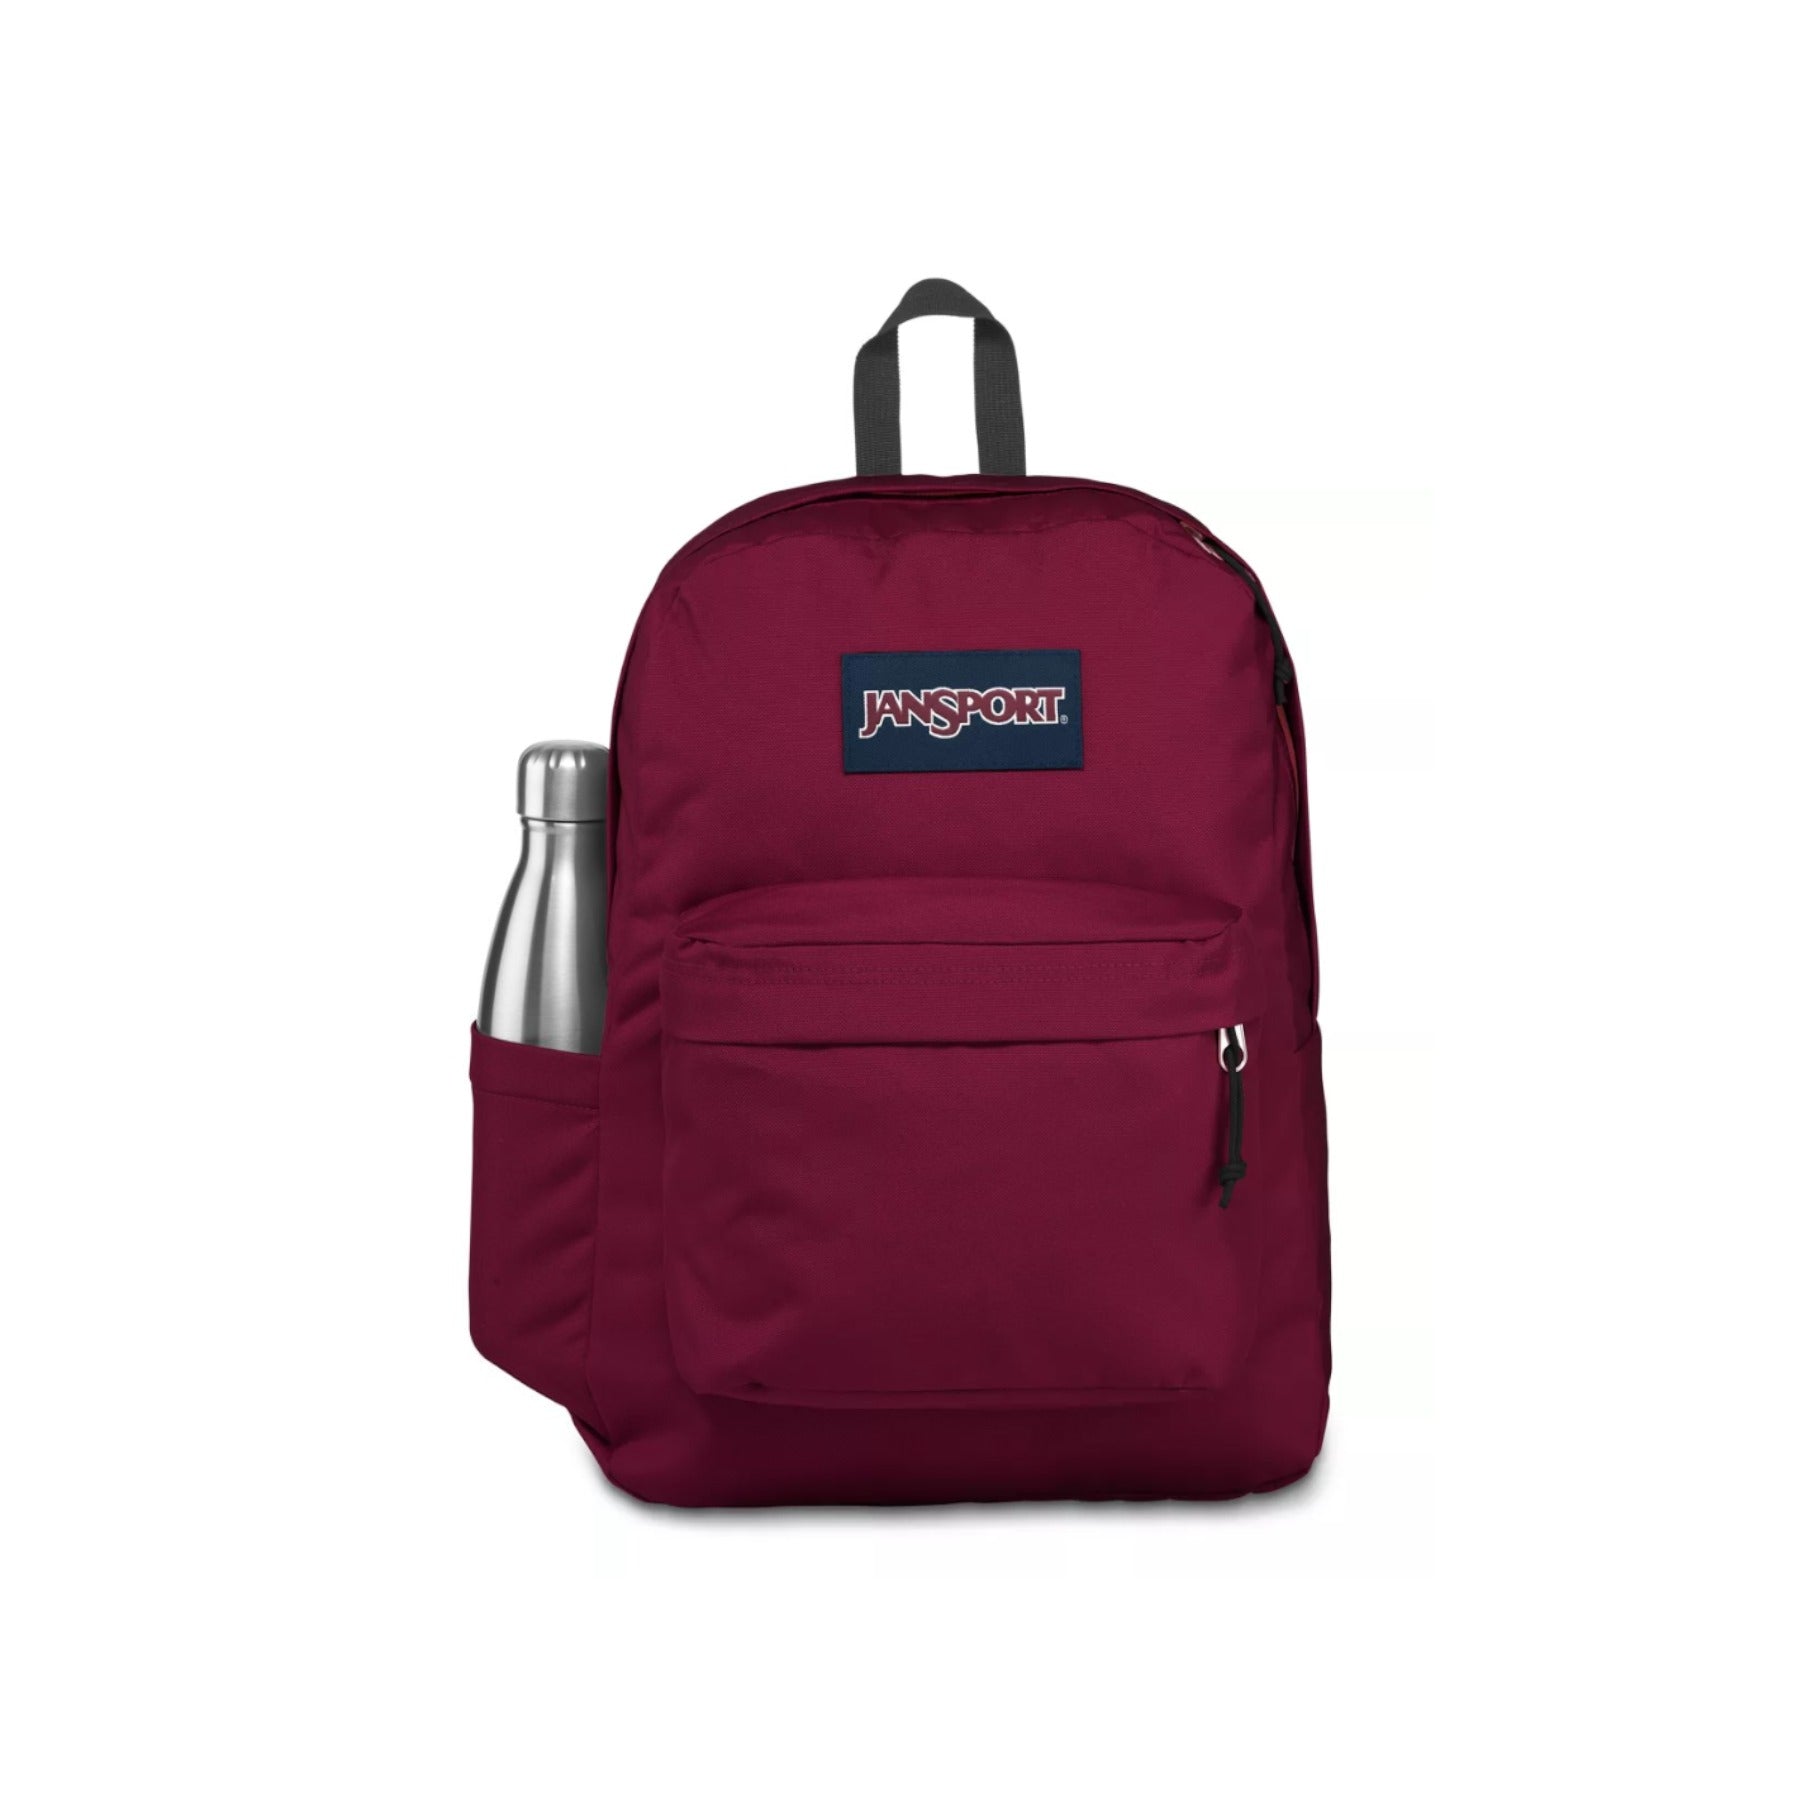 Jansport Superbreak Backpack - Russet Red